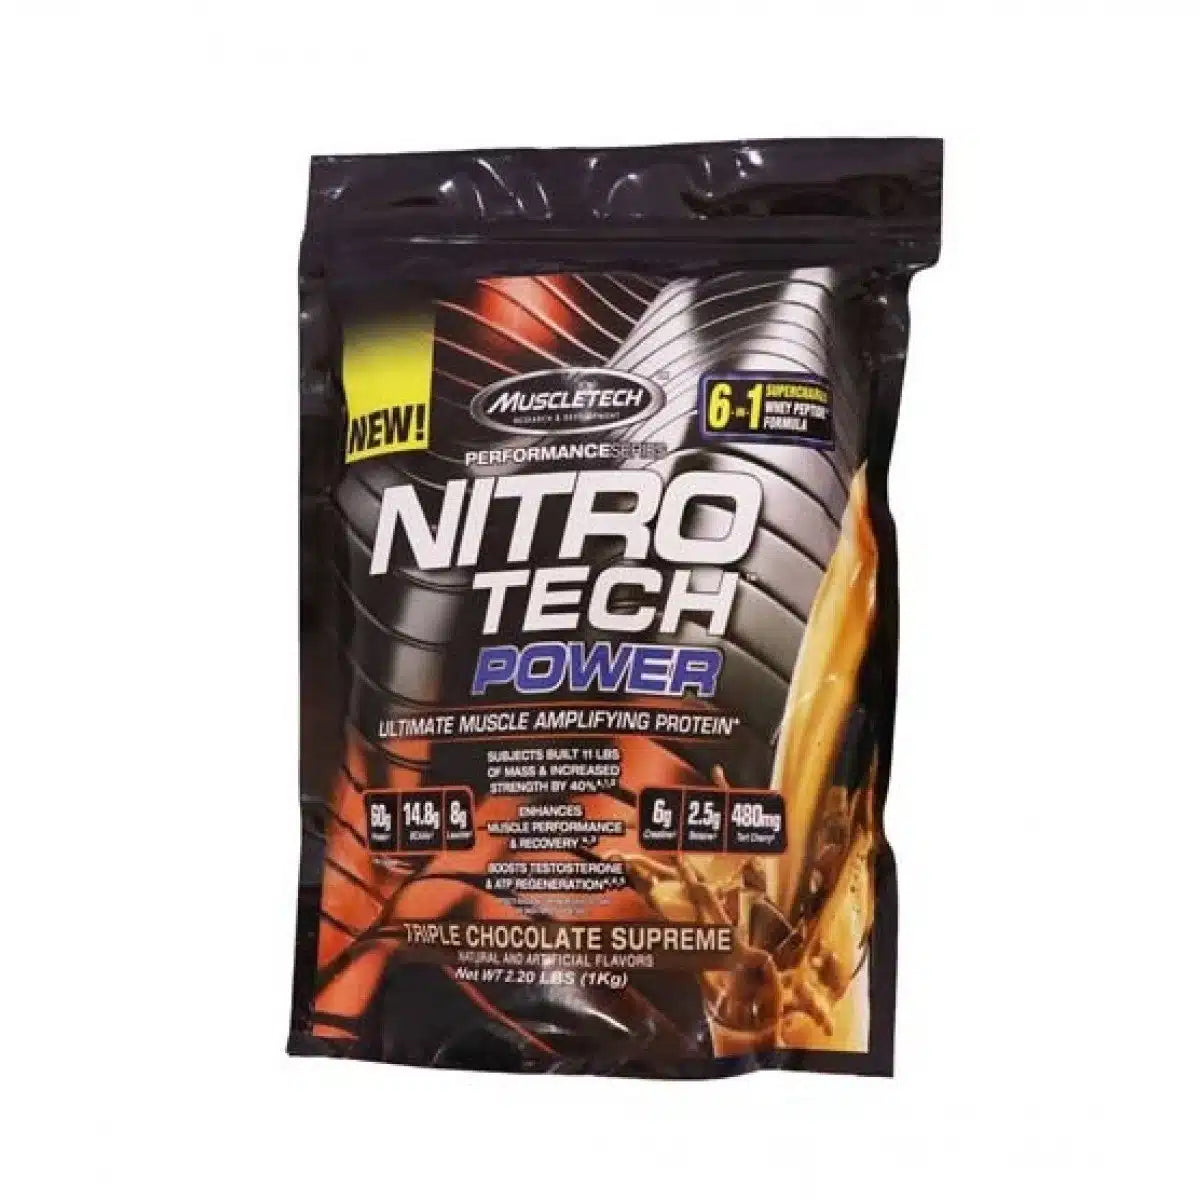 MuscleTech – NitroTech Power Protein Blend